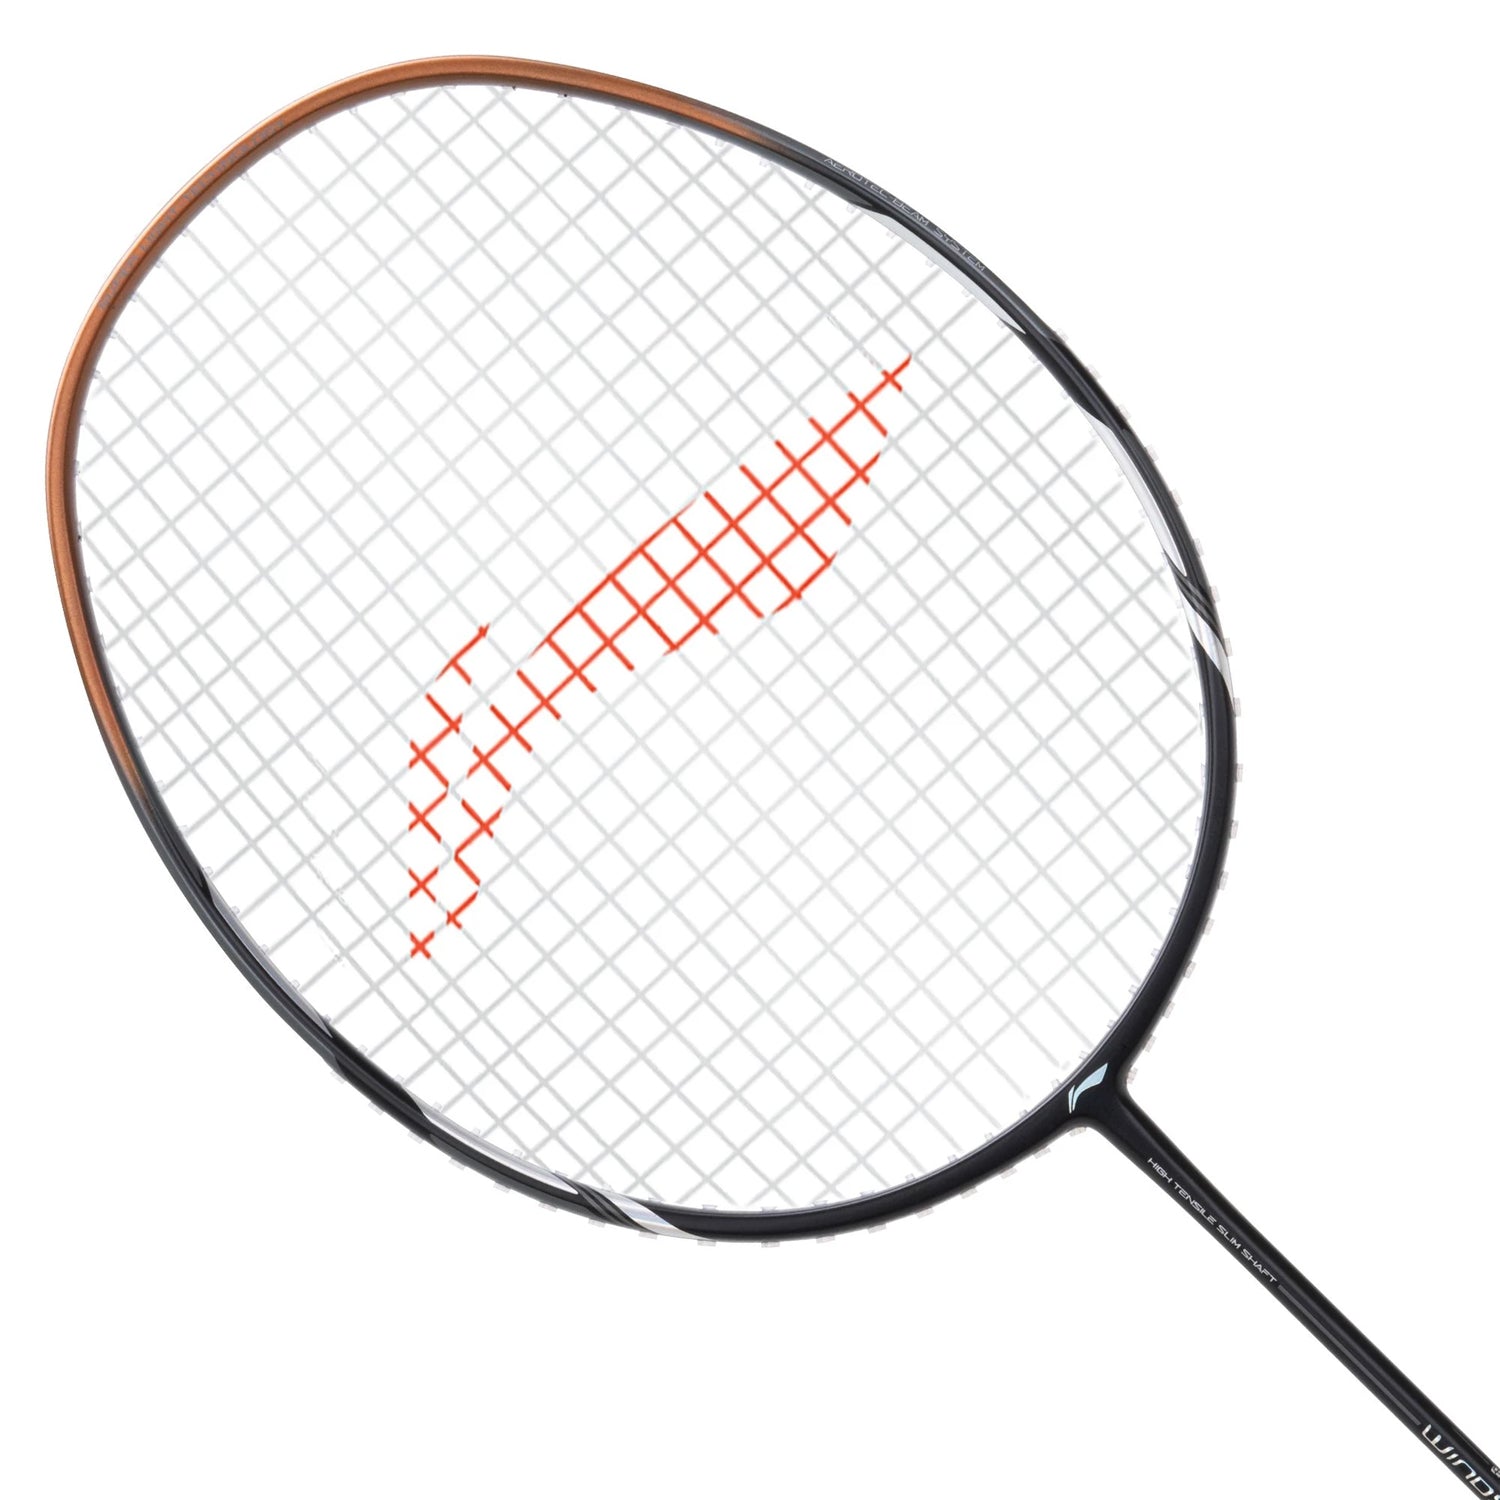 Li-Ning Windstorm 78s UnStrung Badminton Racquet - Best Price online Prokicksports.com